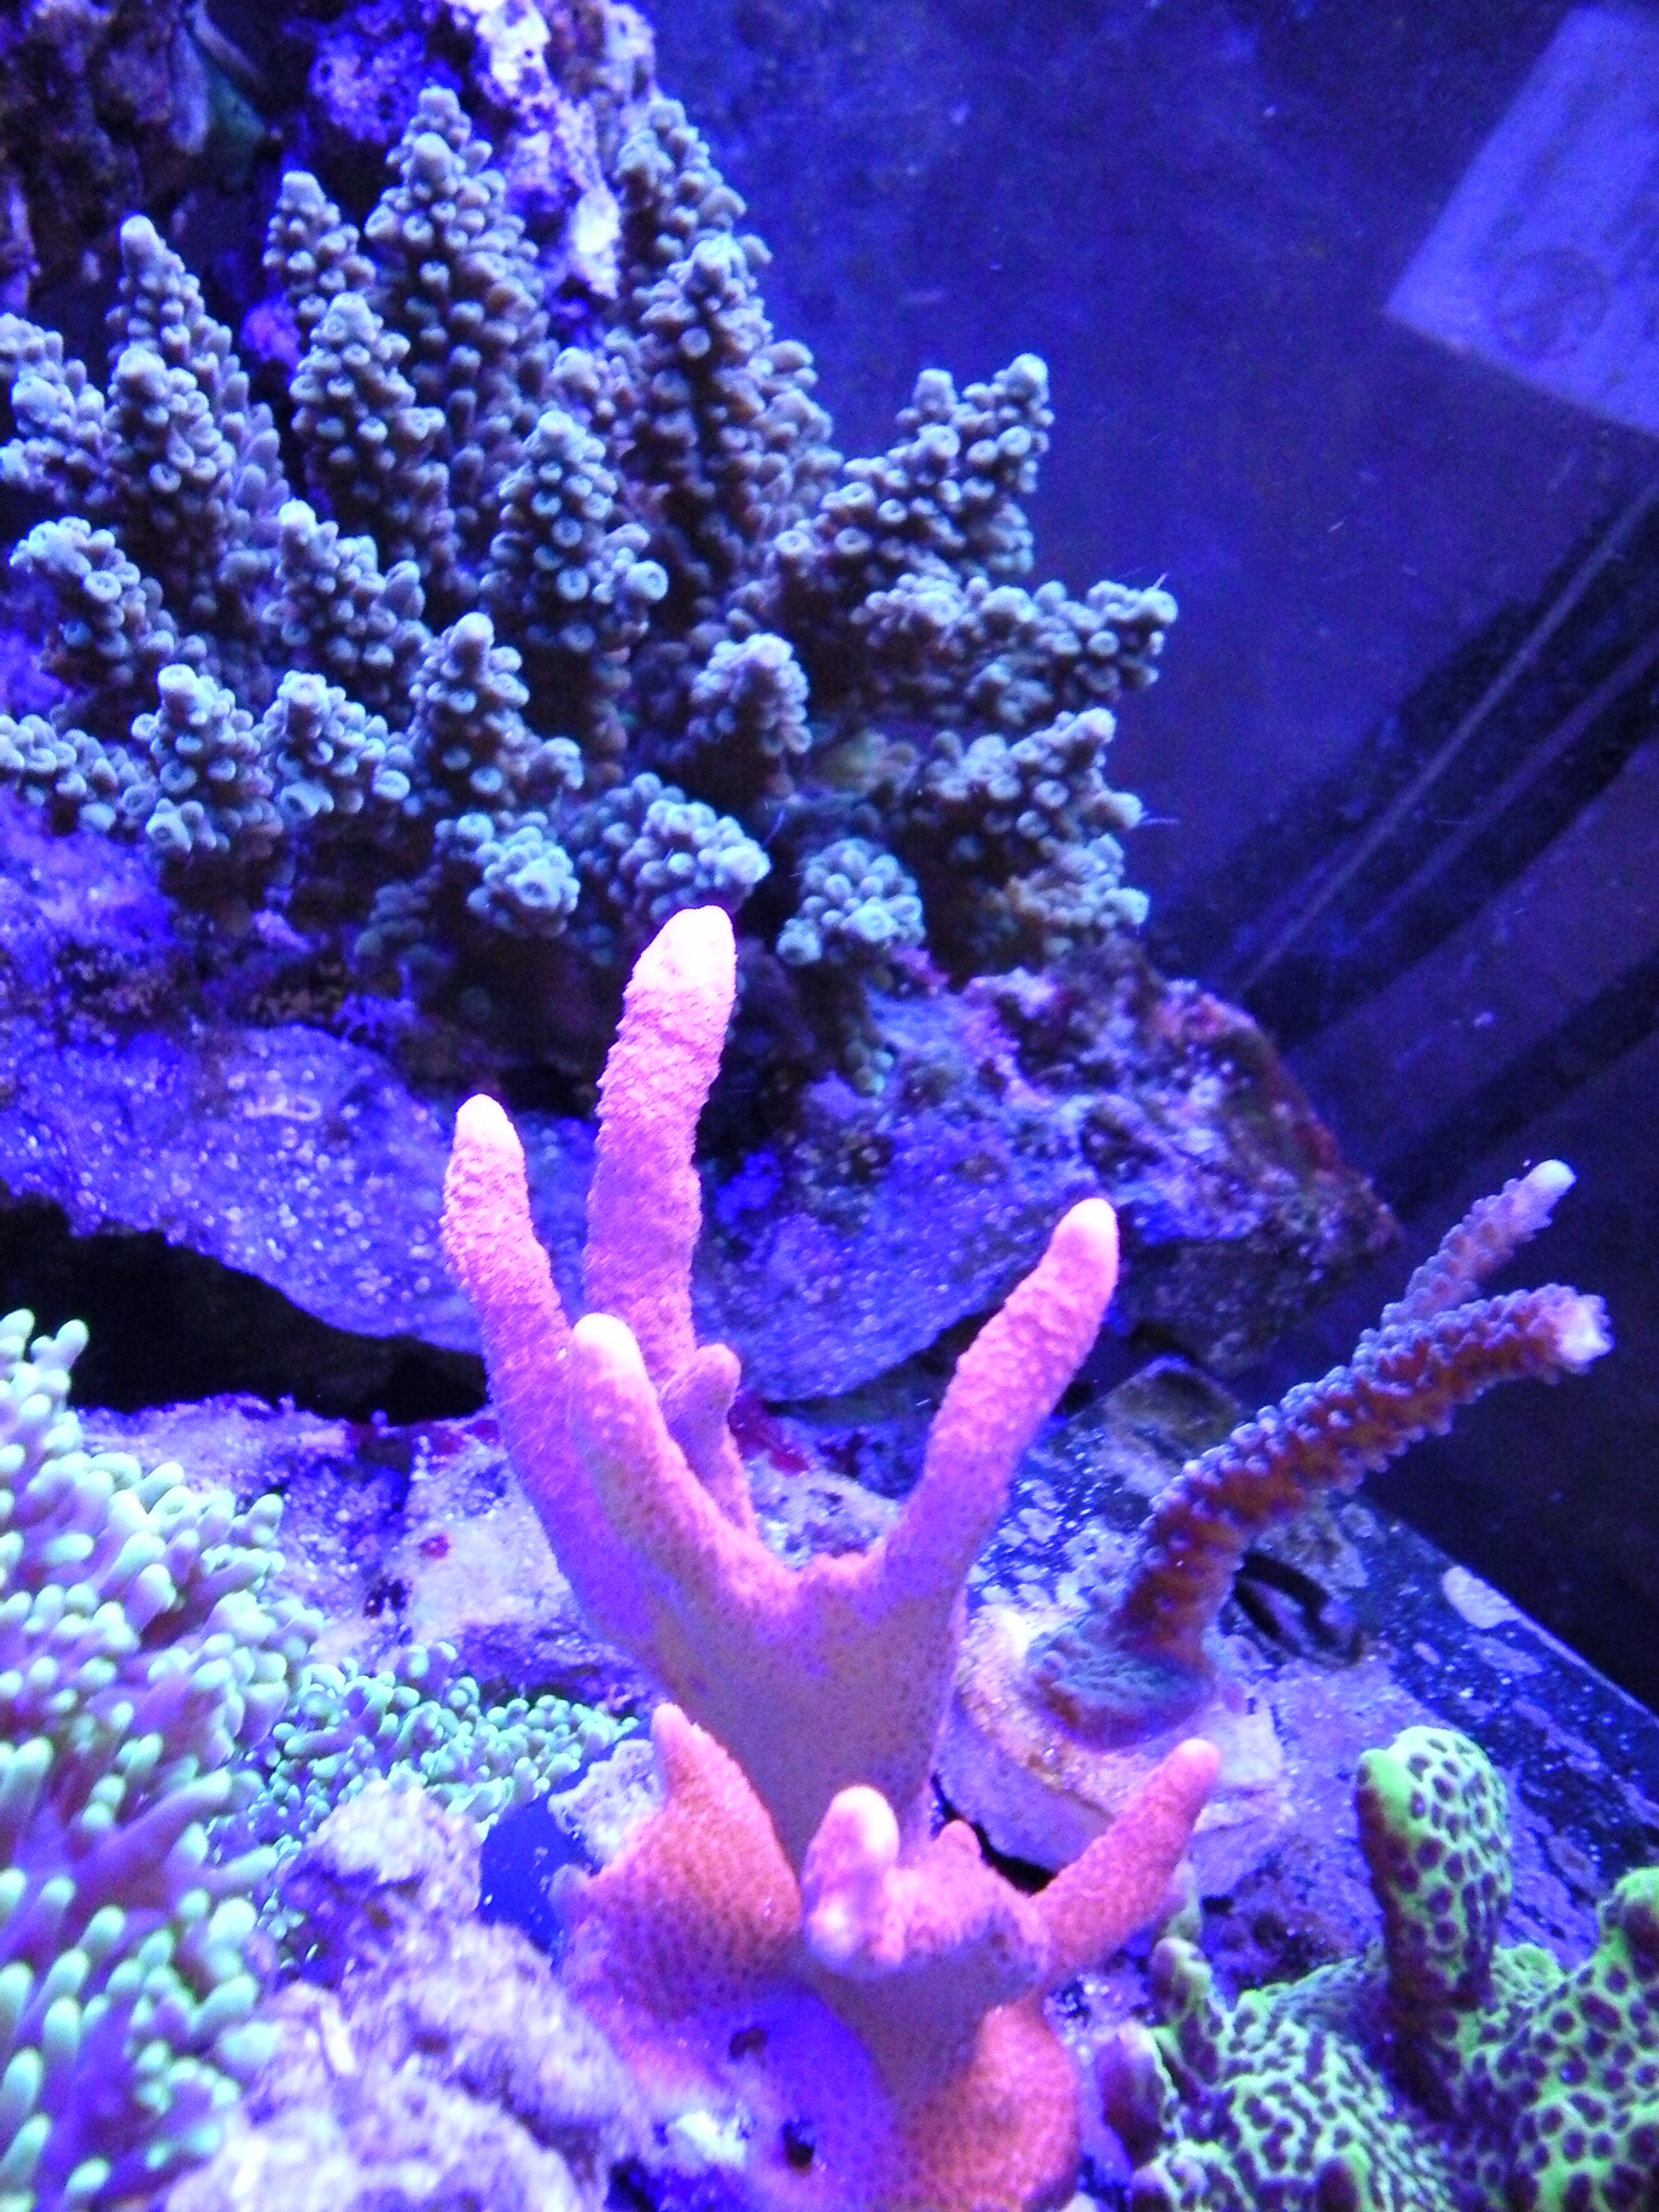 Underwater Camera in my Aquarium